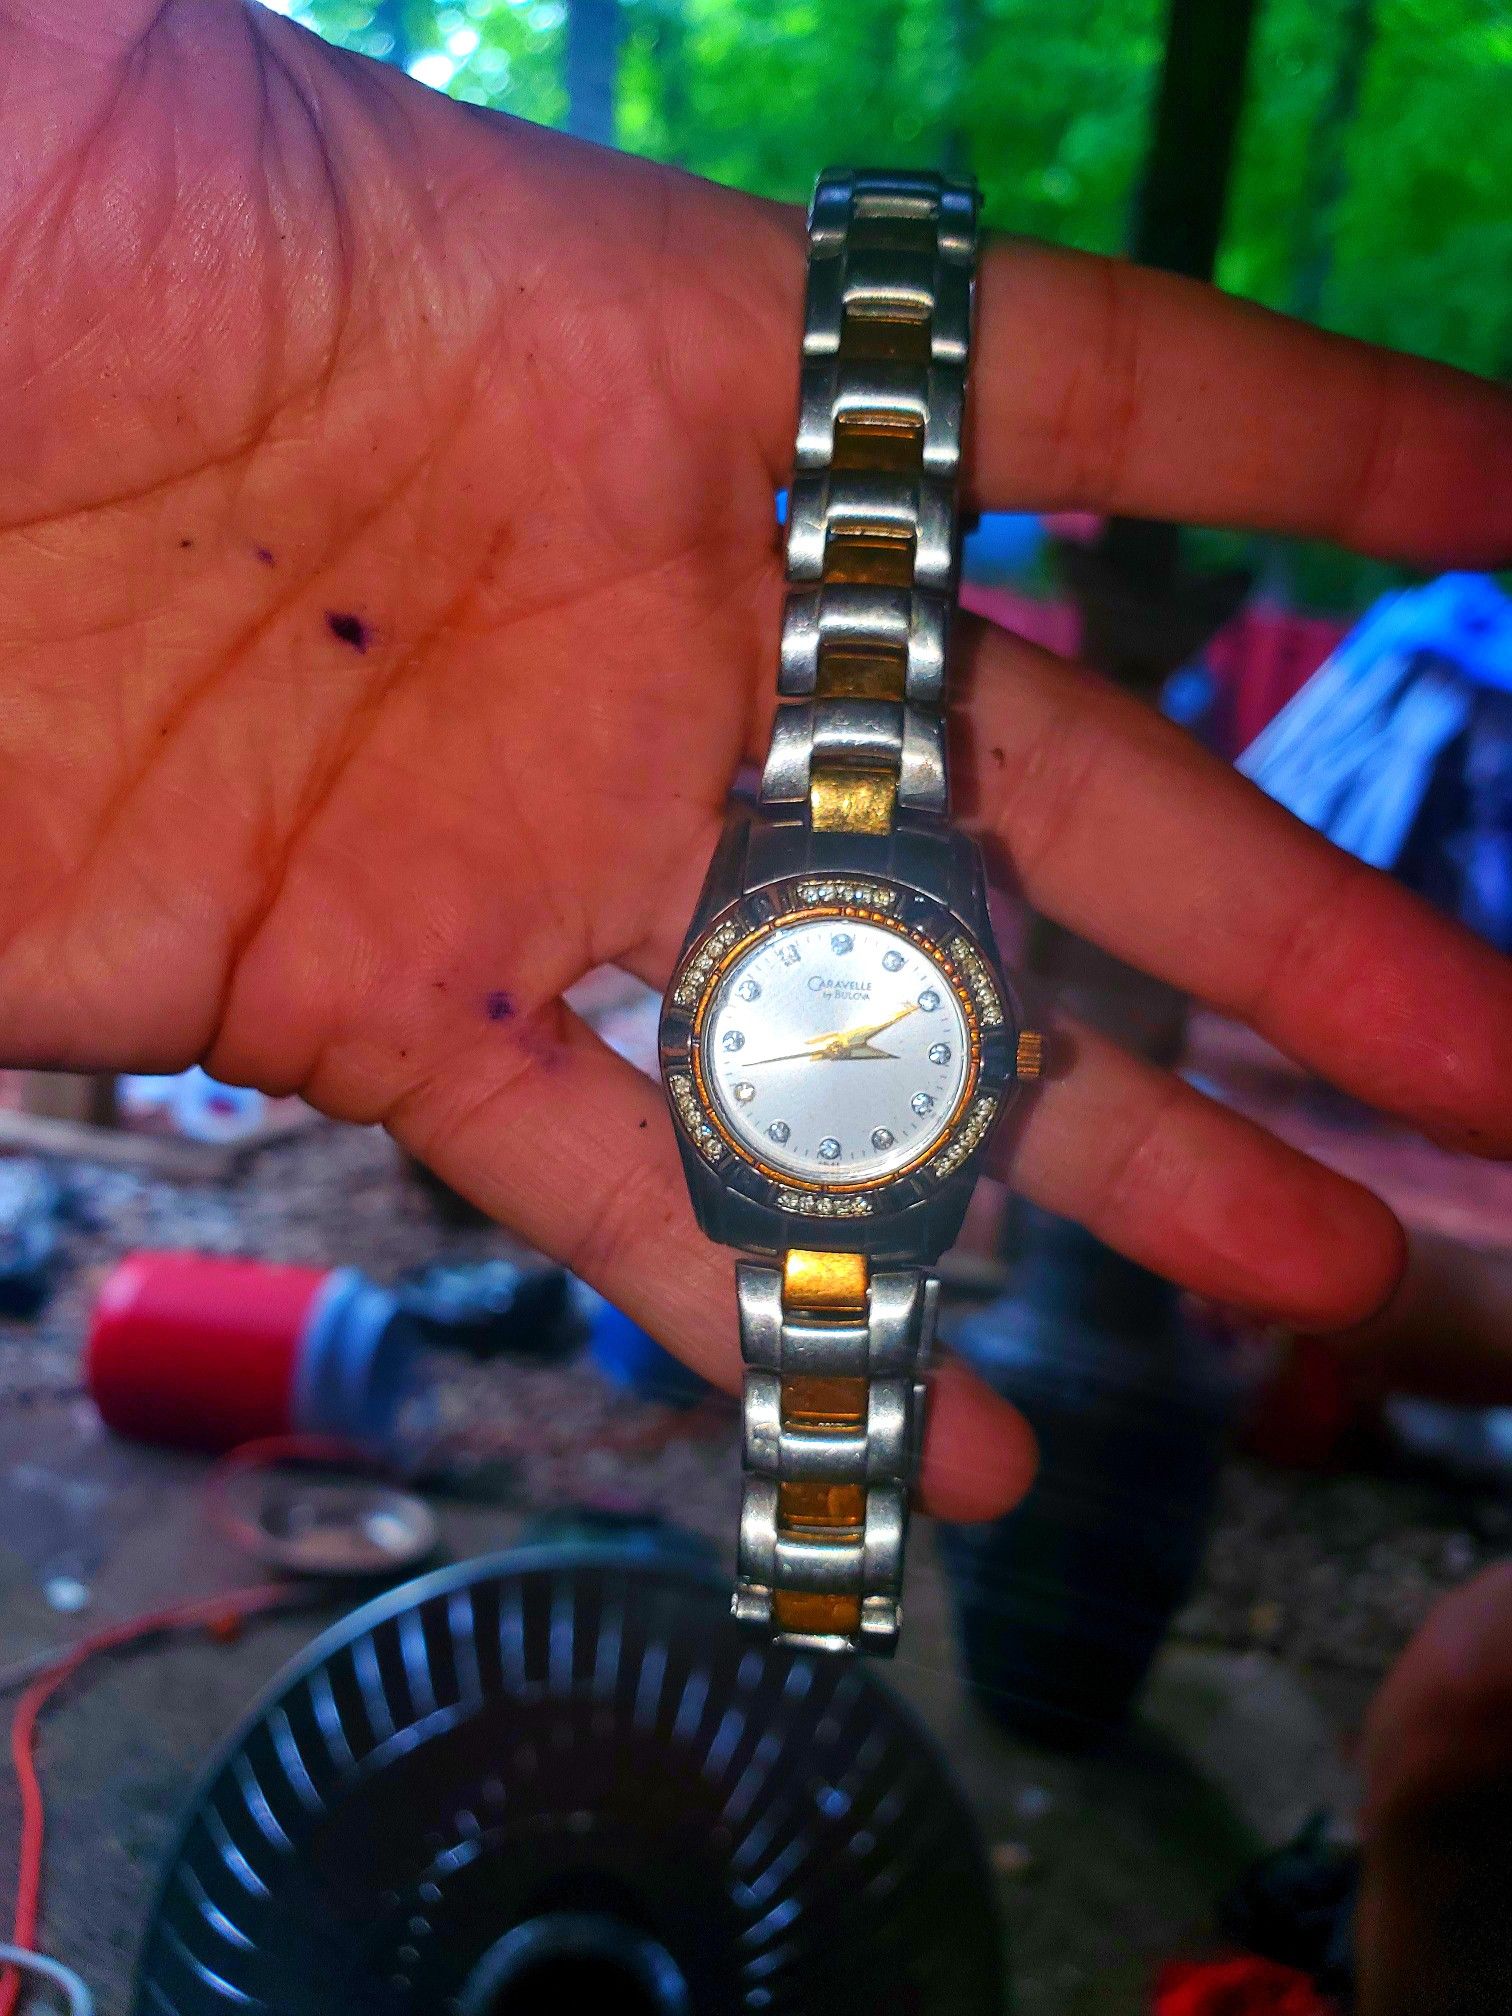 Bulova Women's Sutton Diamond (1/10 ct. t.w.) Stainless Steel Bracelet Watch 32.5mm